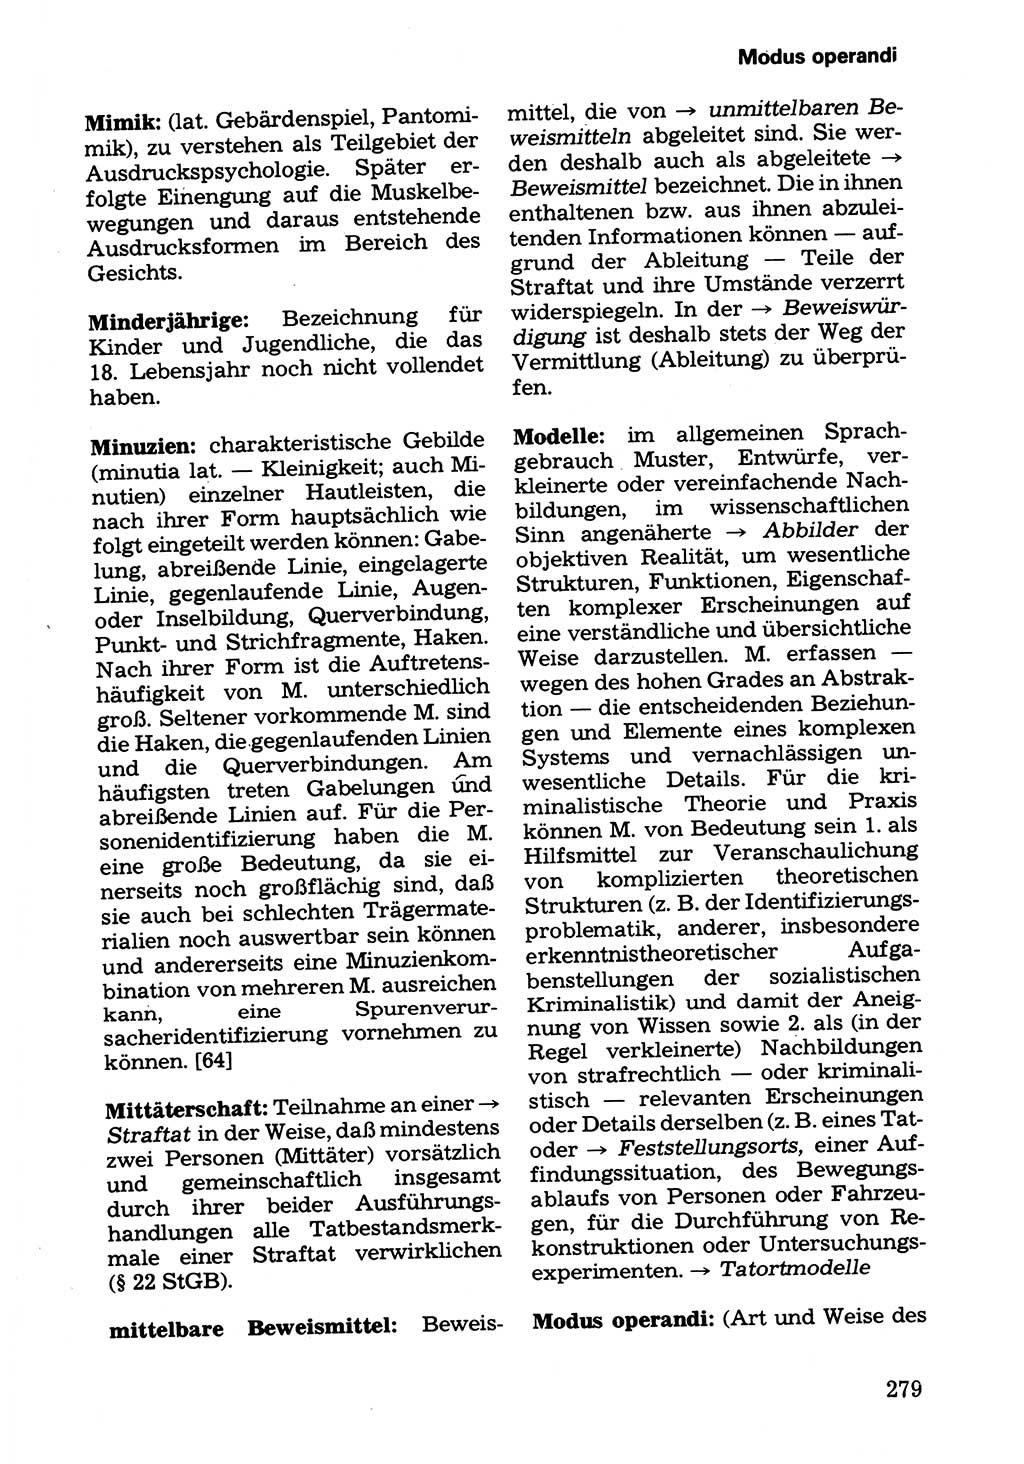 Wörterbuch der sozialistischen Kriminalistik [Deutsche Demokratische Republik (DDR)] 1981, Seite 279 (Wb. soz. Krim. DDR 1981, S. 279)